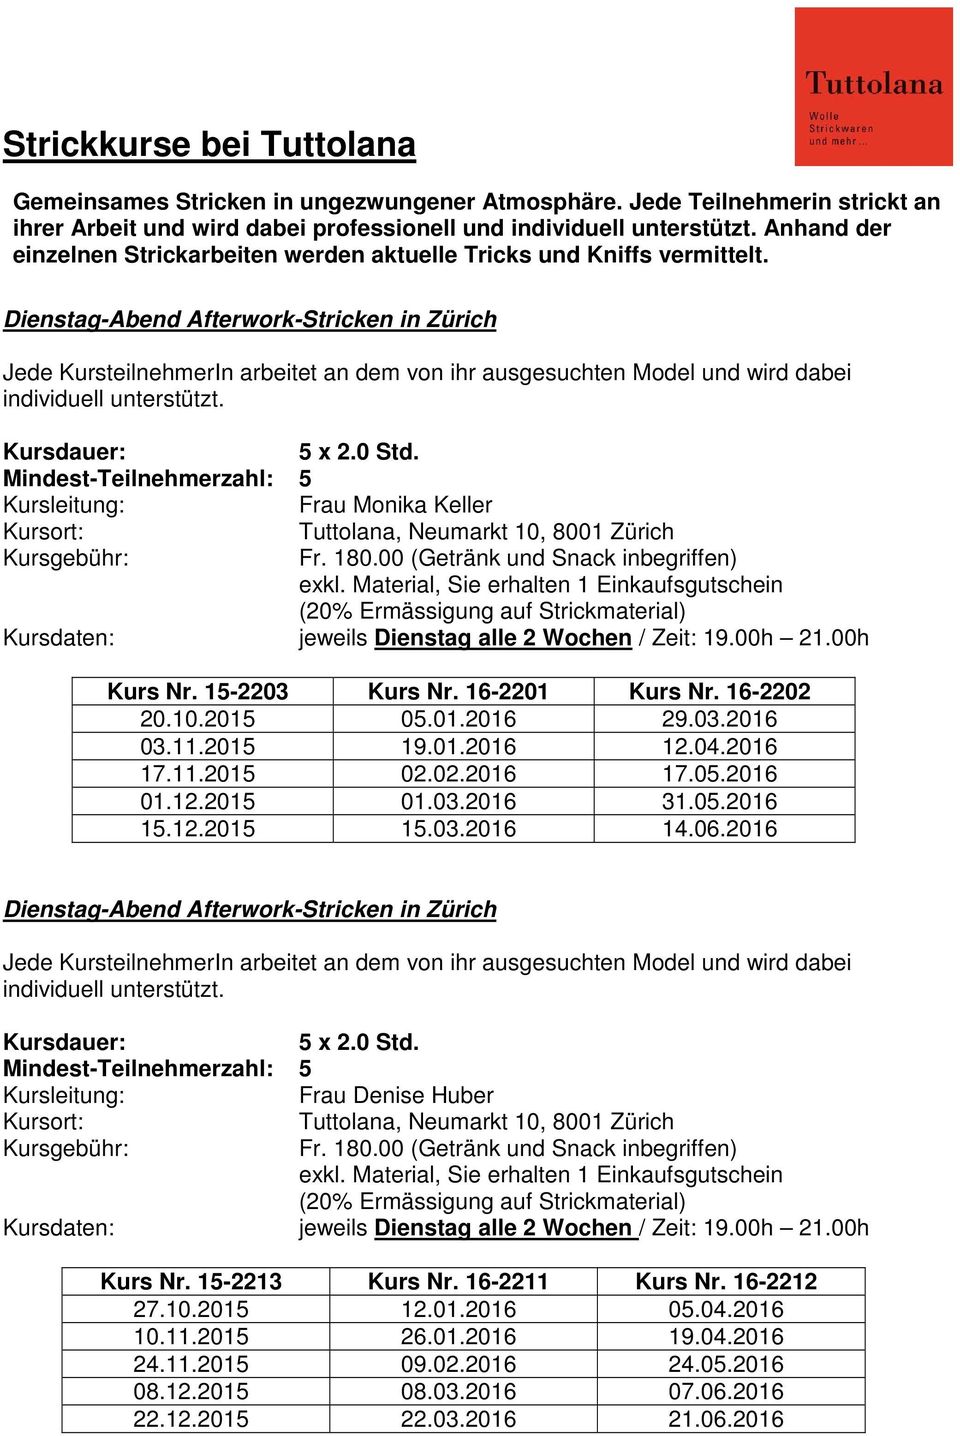 Dienstag-Abend Afterwork-Stricken in Zürich Kursdaten: jeweils Dienstag alle 2 Wochen / Zeit: 19.00h 21.00h Kurs Nr. 15-2203 Kurs Nr. 16-2201 Kurs Nr. 16-2202 20.10.2015 05.01.2016 29.03.2016 03.11.